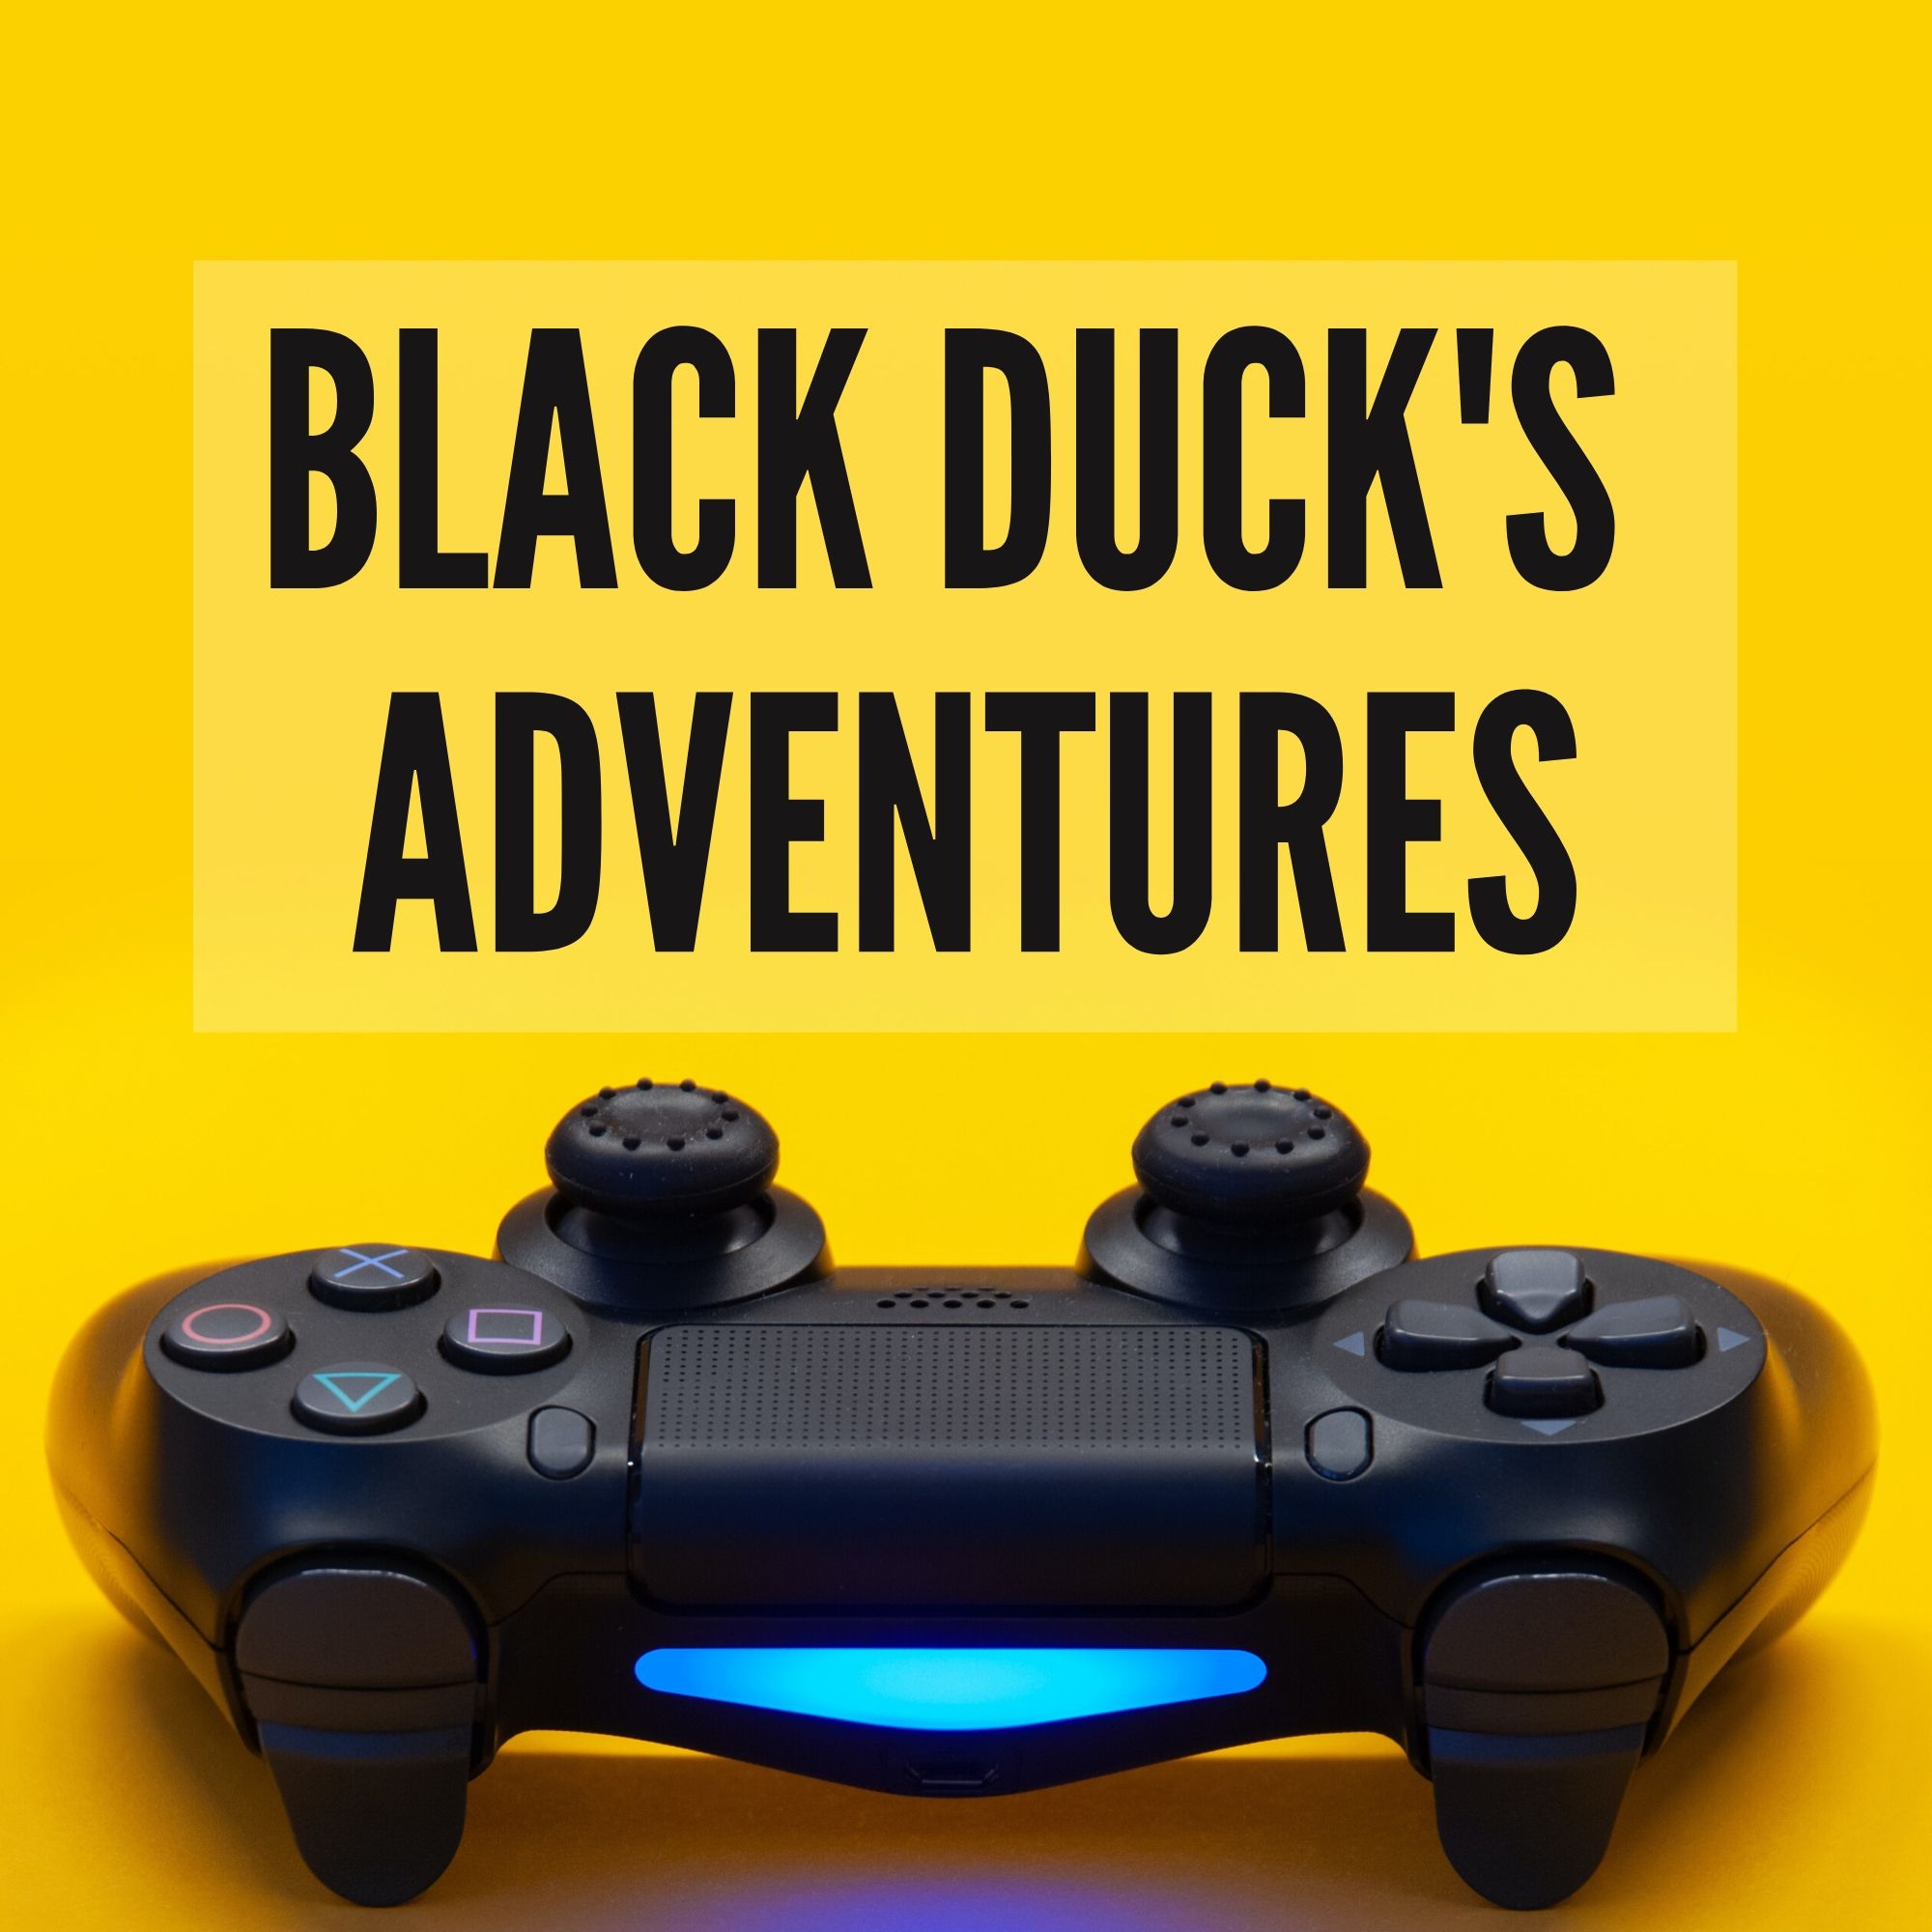 Black Duck's Adventures